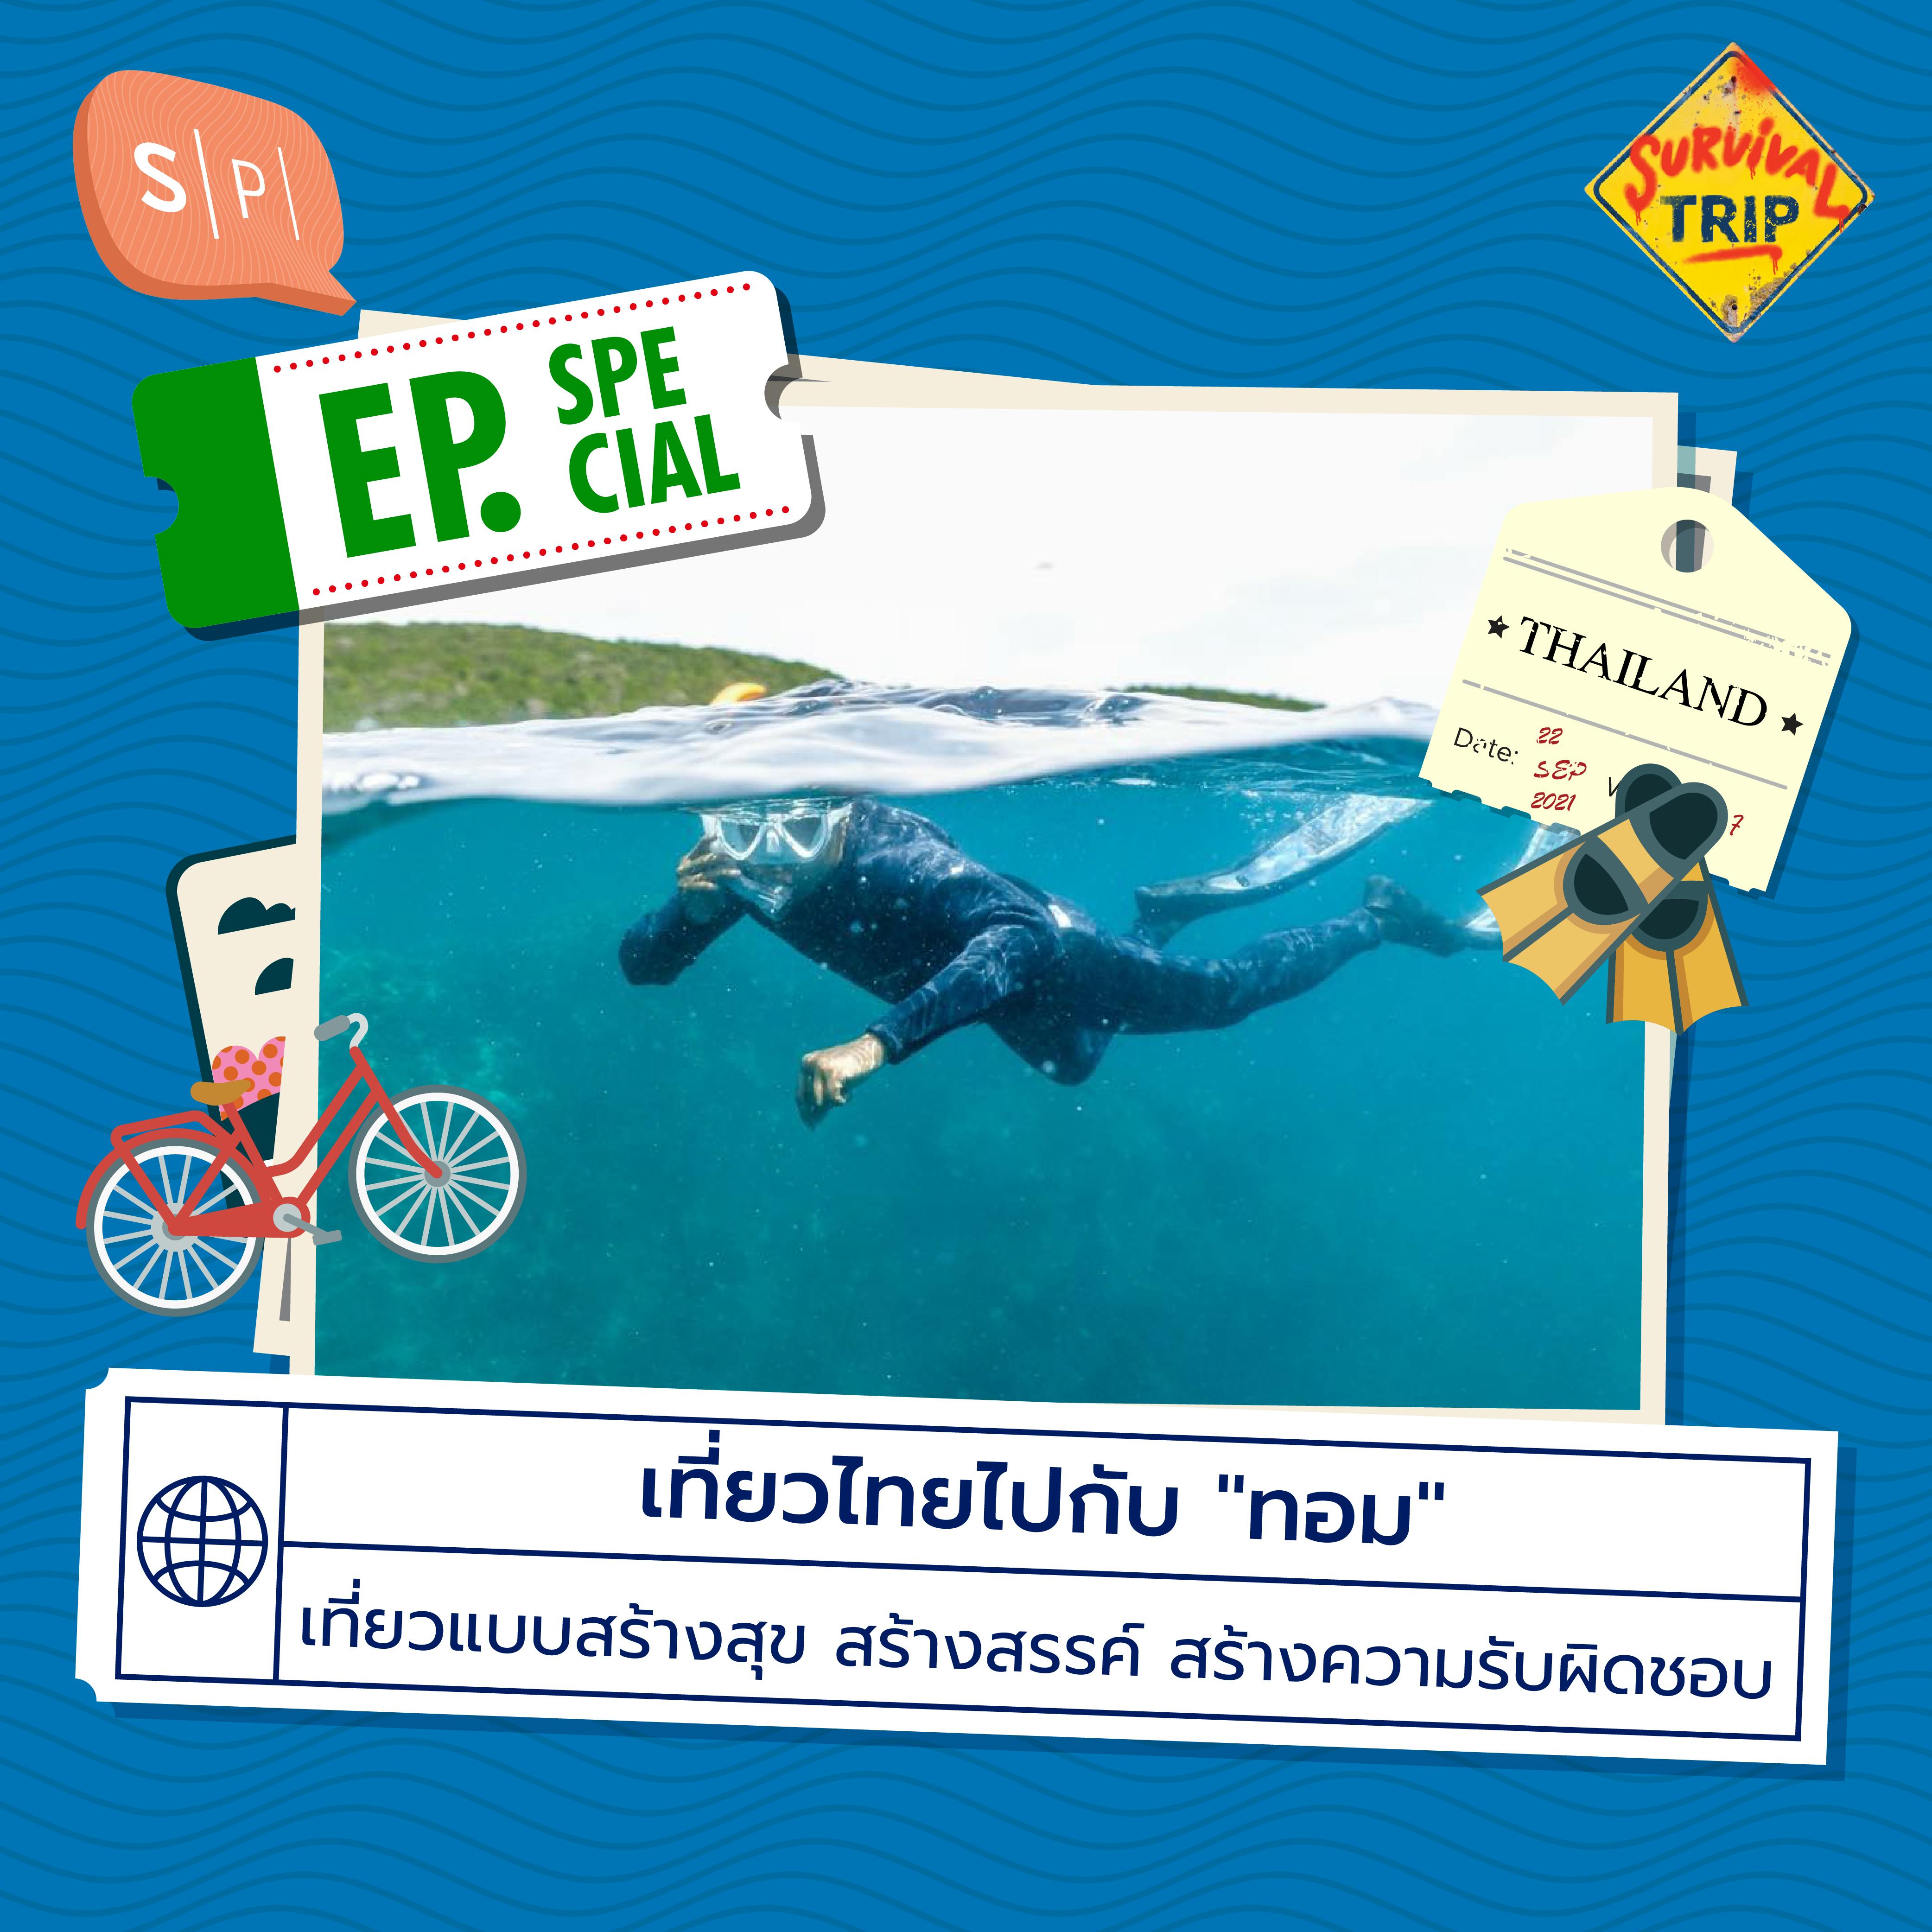 เที่ยวไทยไปกับ ”ทอม” เที่ยวแบบสร้างสุข สร้างสรรค์ สร้างความรับผิดชอบ | EP SP